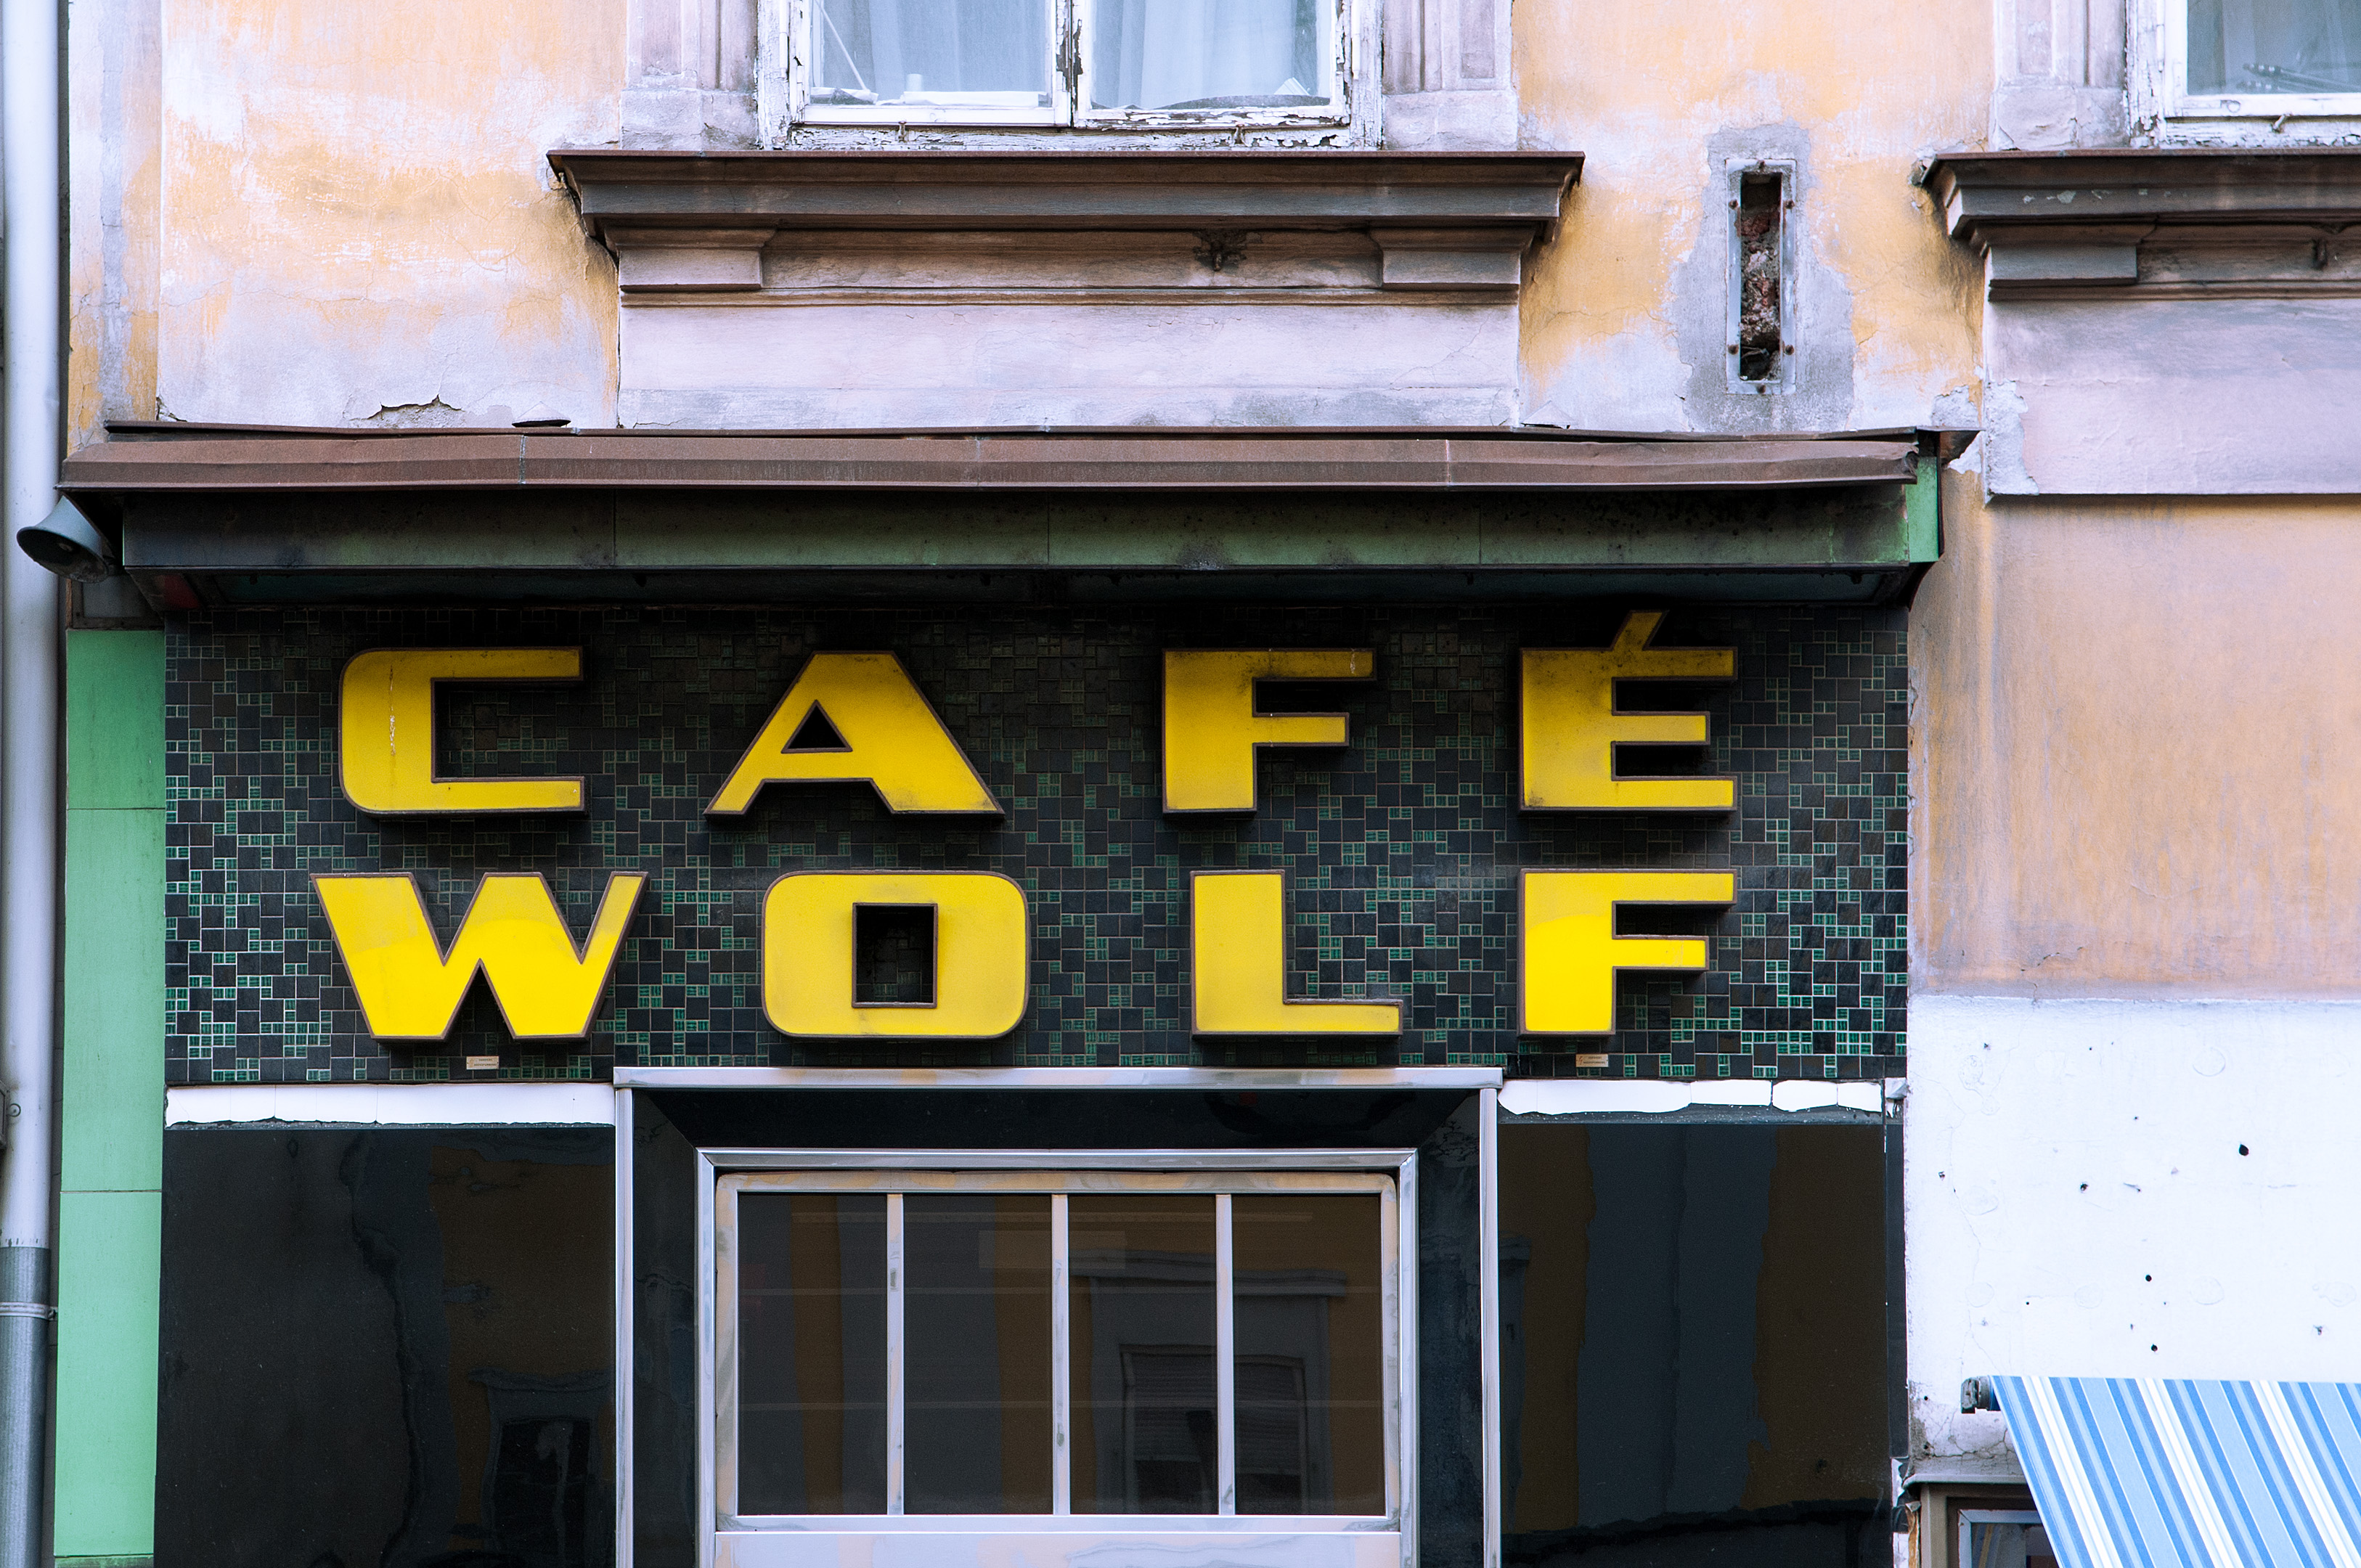 Werbefotografie Studio Oberfranken Street Aufnahme mit Reklameschrift "Café Wolf" in Graz, Österreich. Feigfotodesign